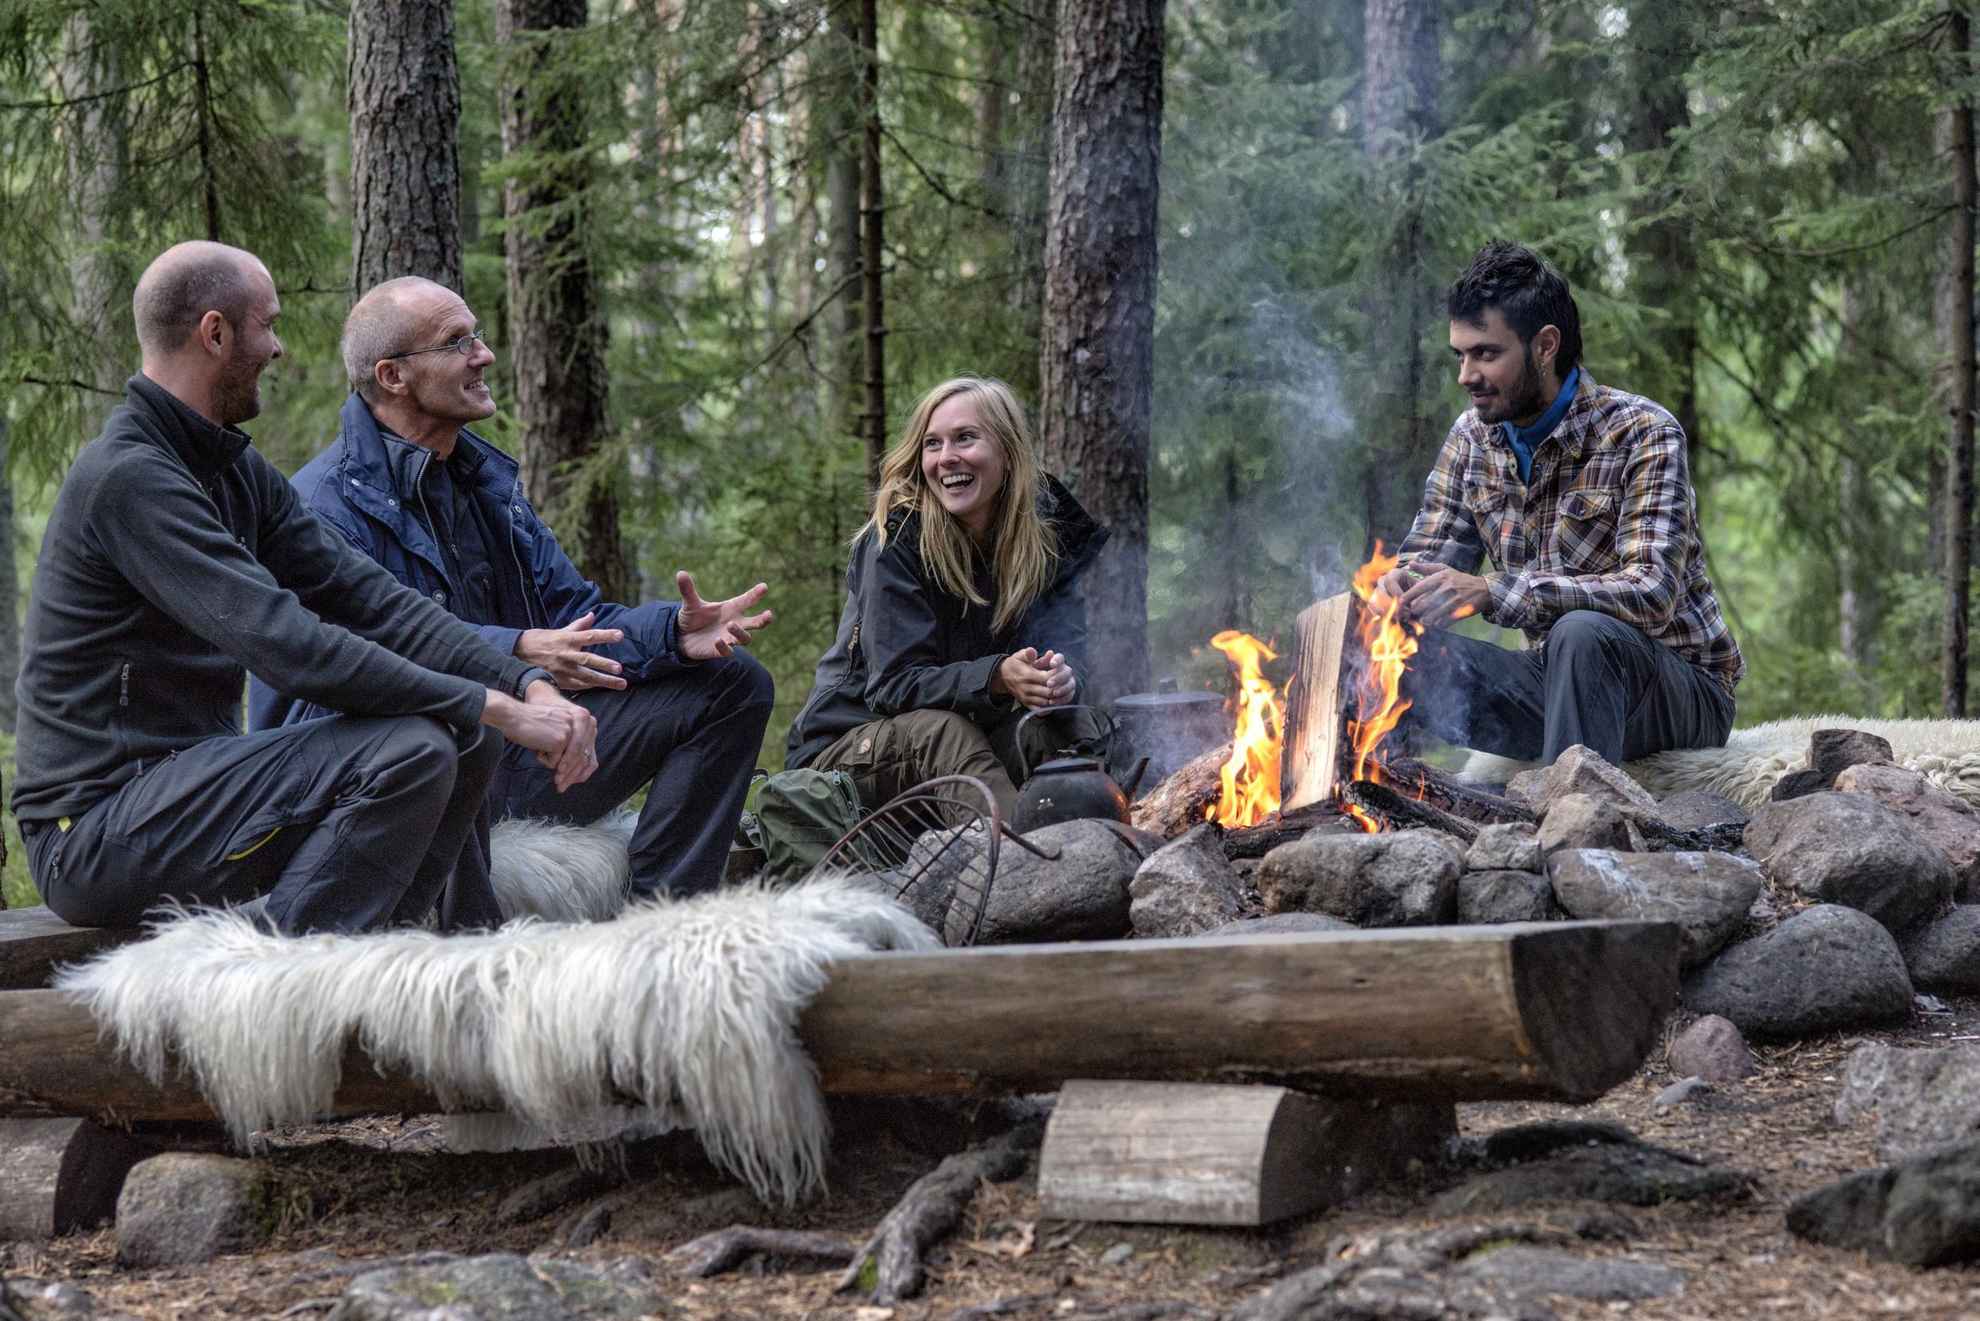 Vier mensen zitten lachend rond een kampvuur in een bos.